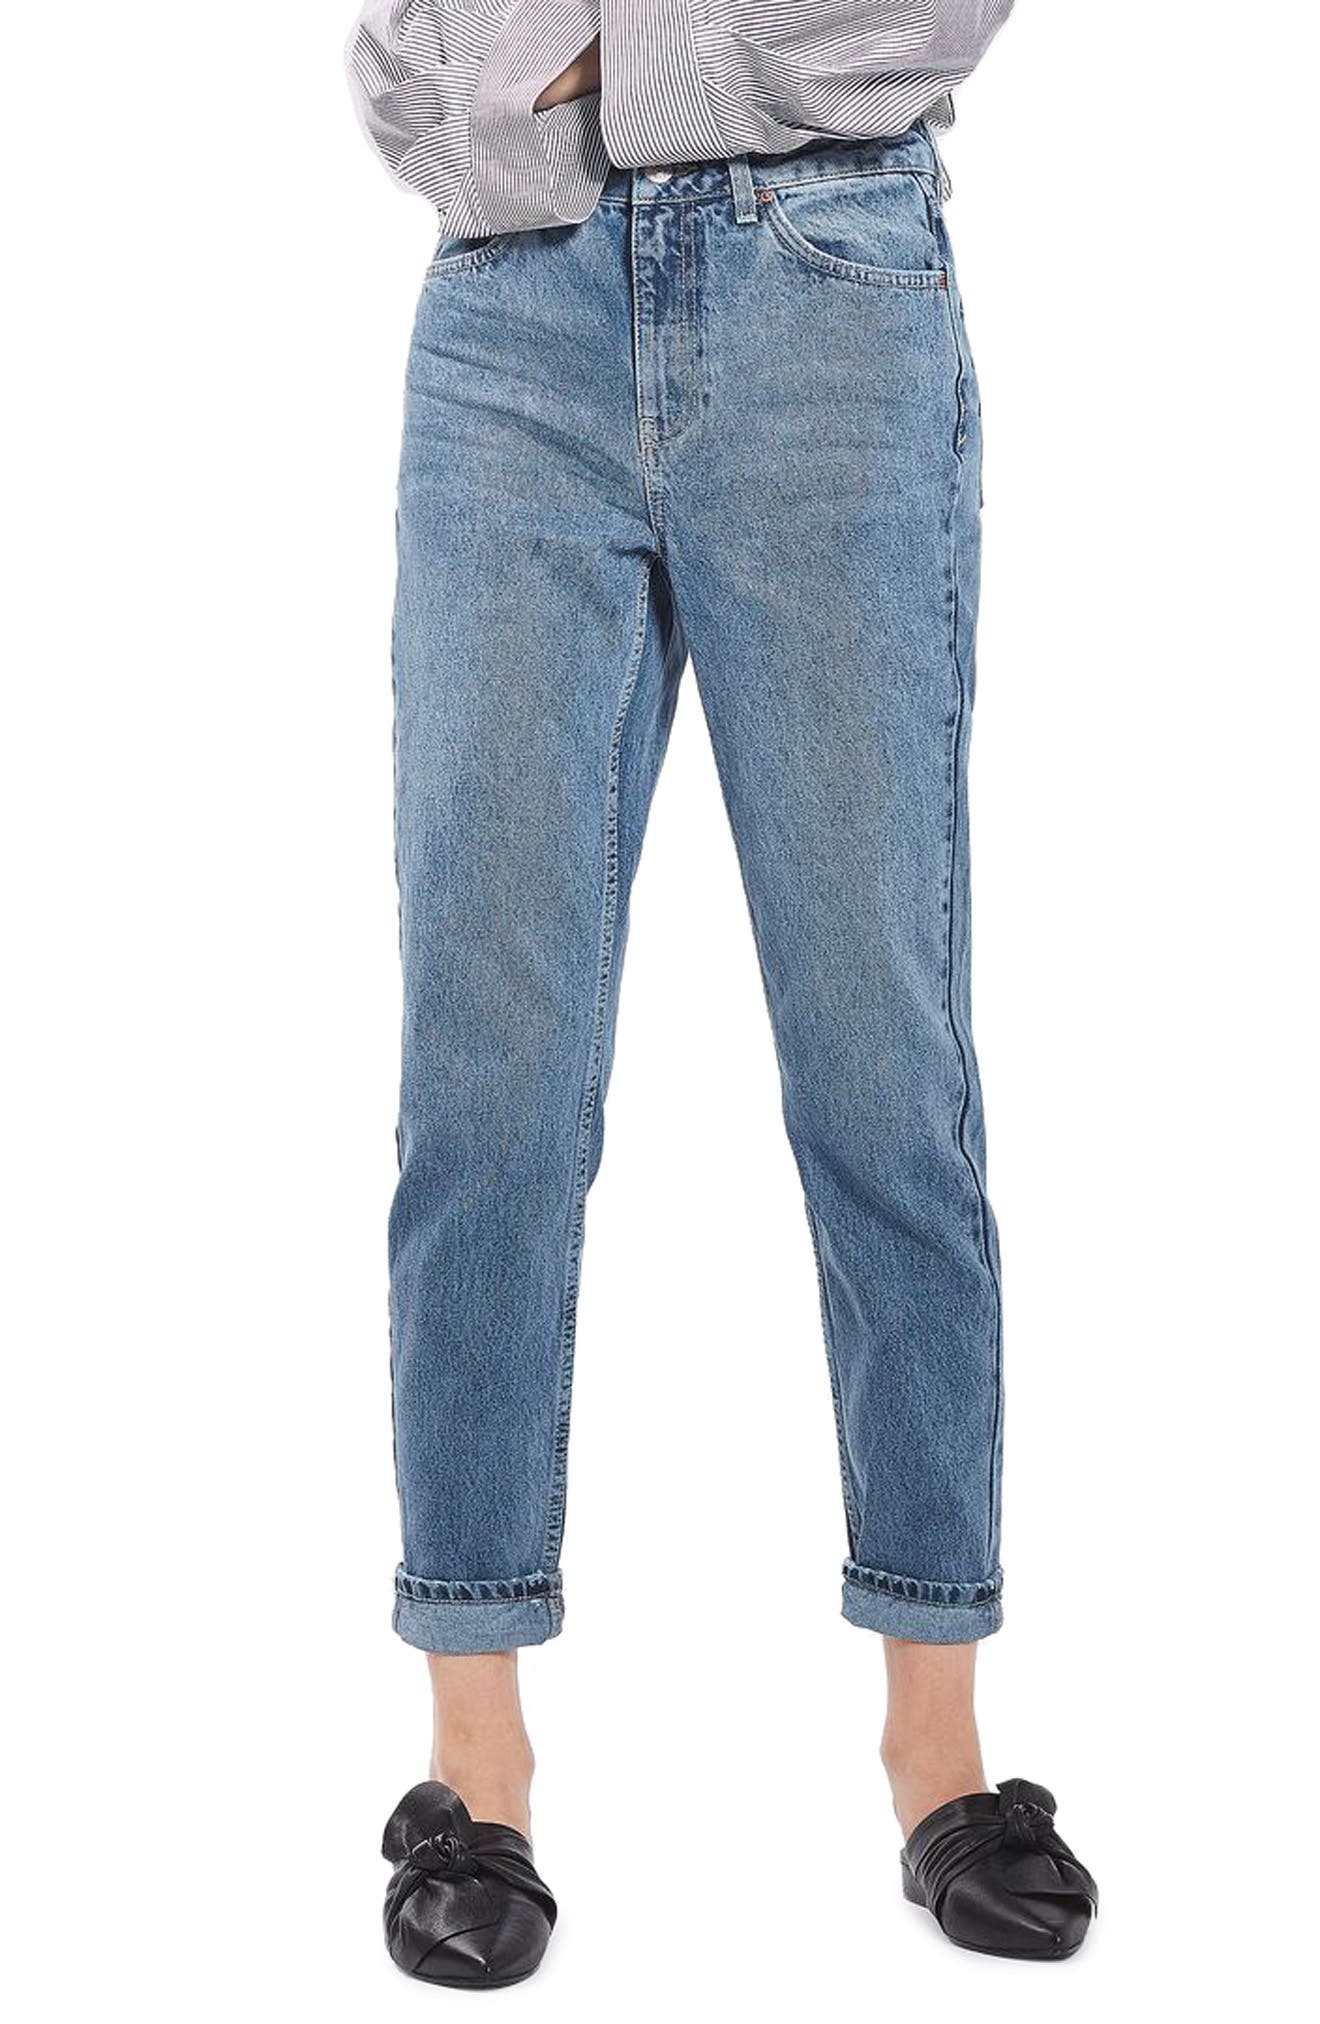 nordstrom topshop jeans